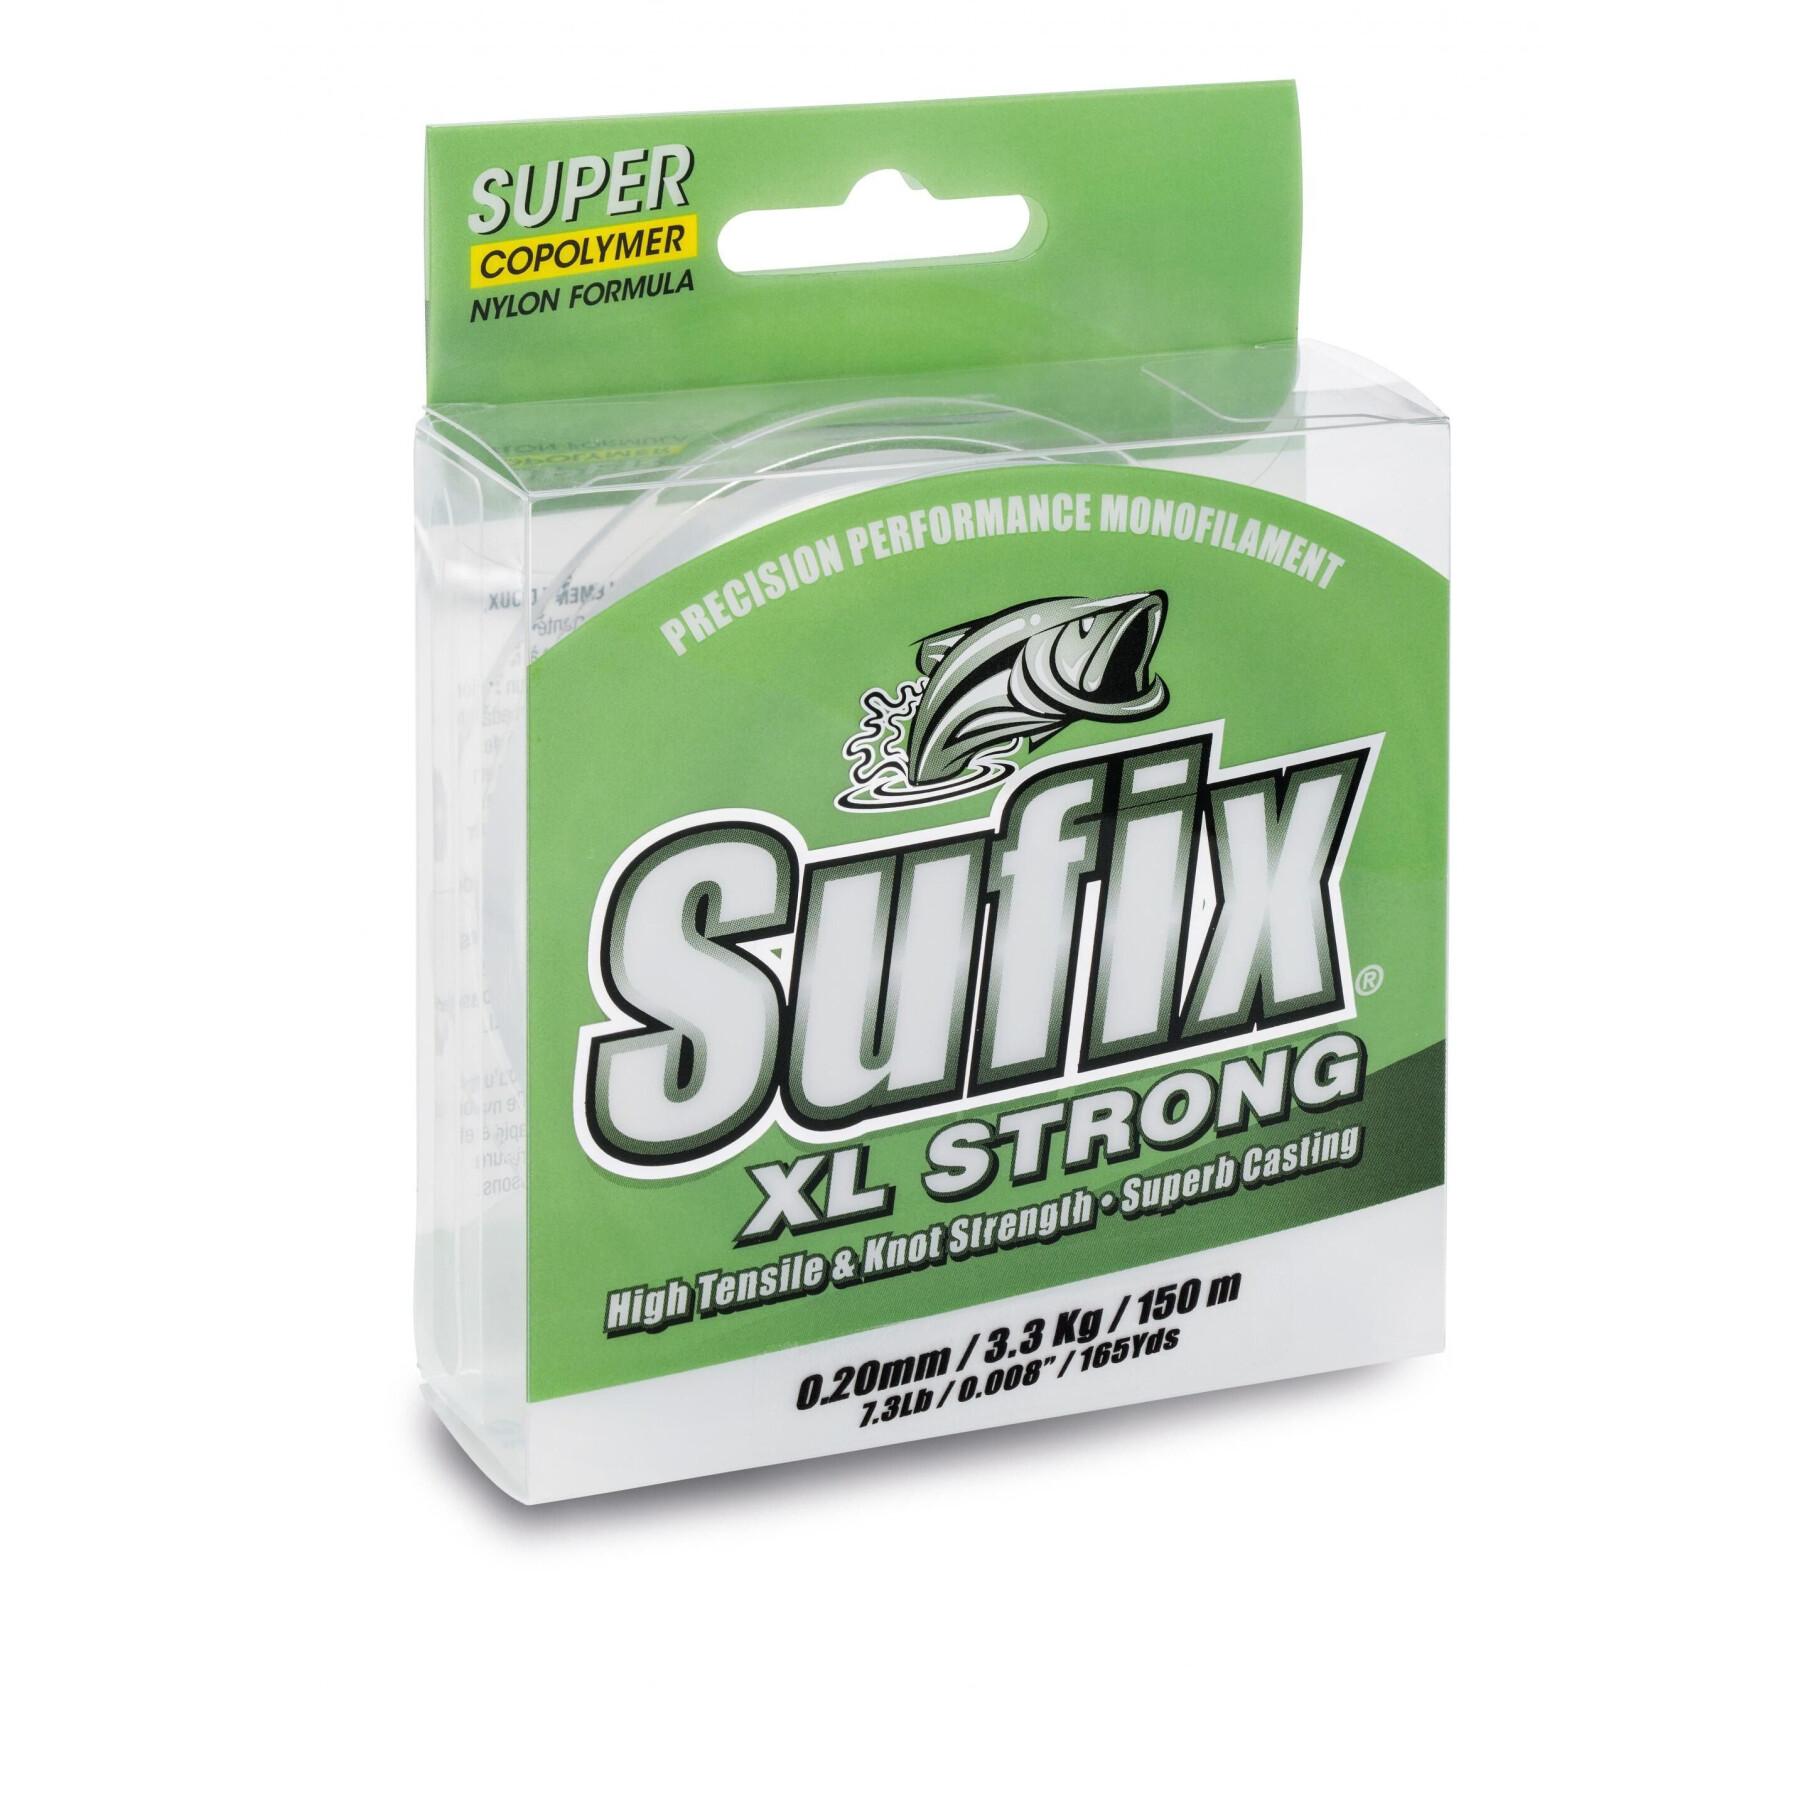 Treccia Sufix XL Strong 40